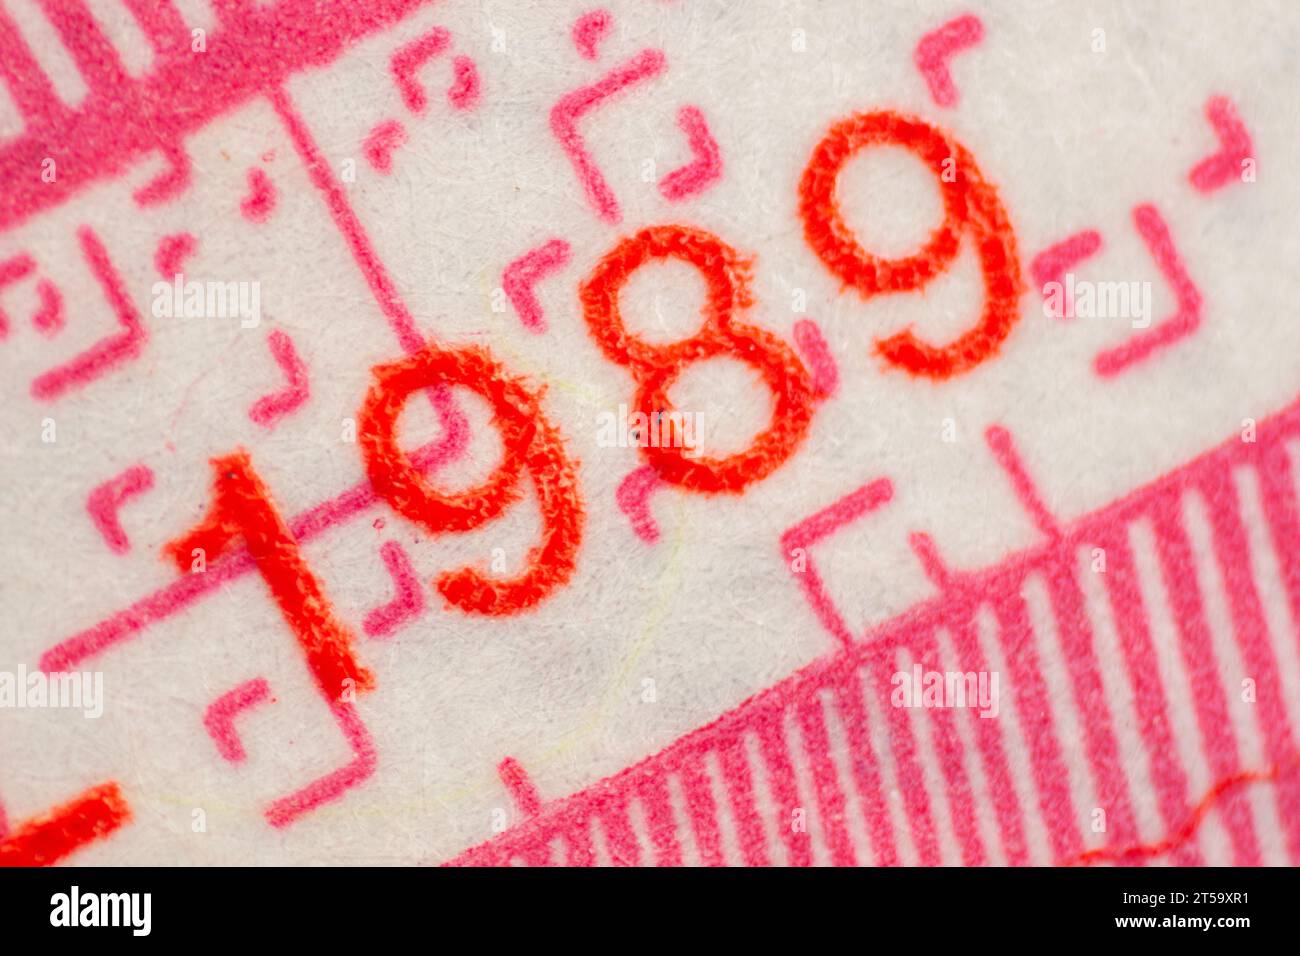 Einzelheiten zu einem alten niederländischen Währungsschein aus dem Jahr 1989 Stockfoto